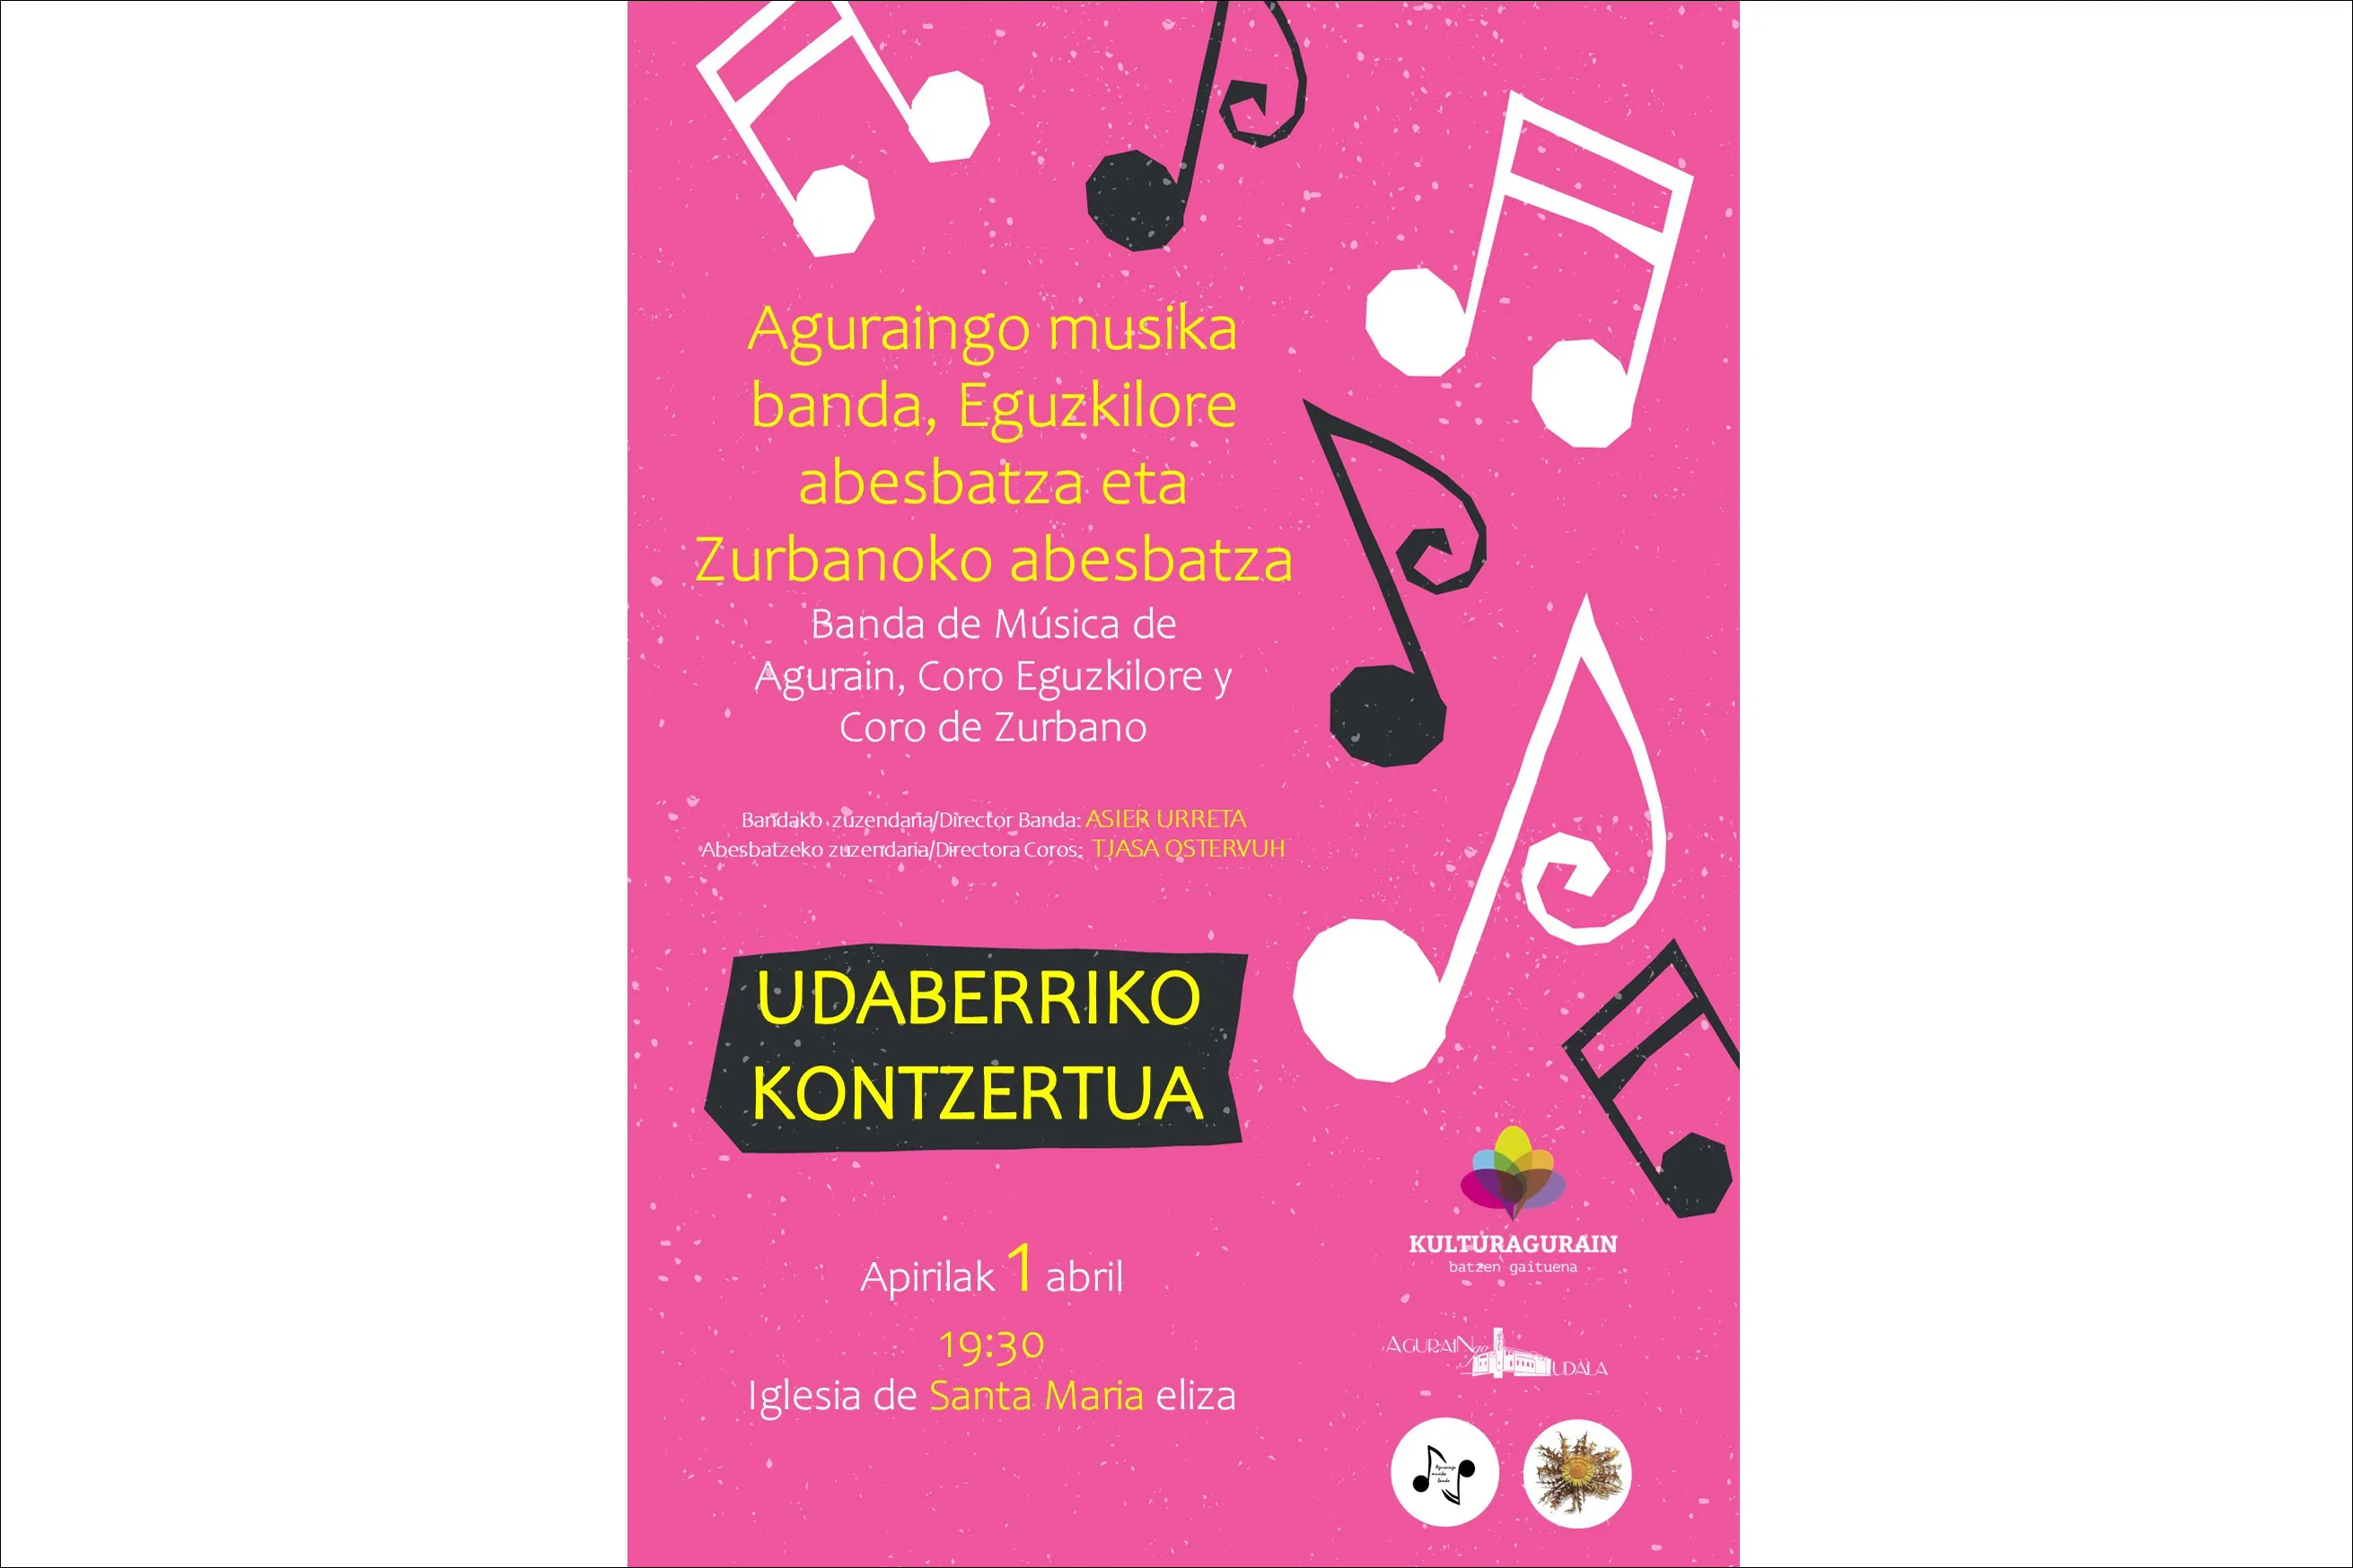 Udaberriko Kontzertua: Banda de Música de Agurain + Coro Eguzkilore + Coro de Zurbano